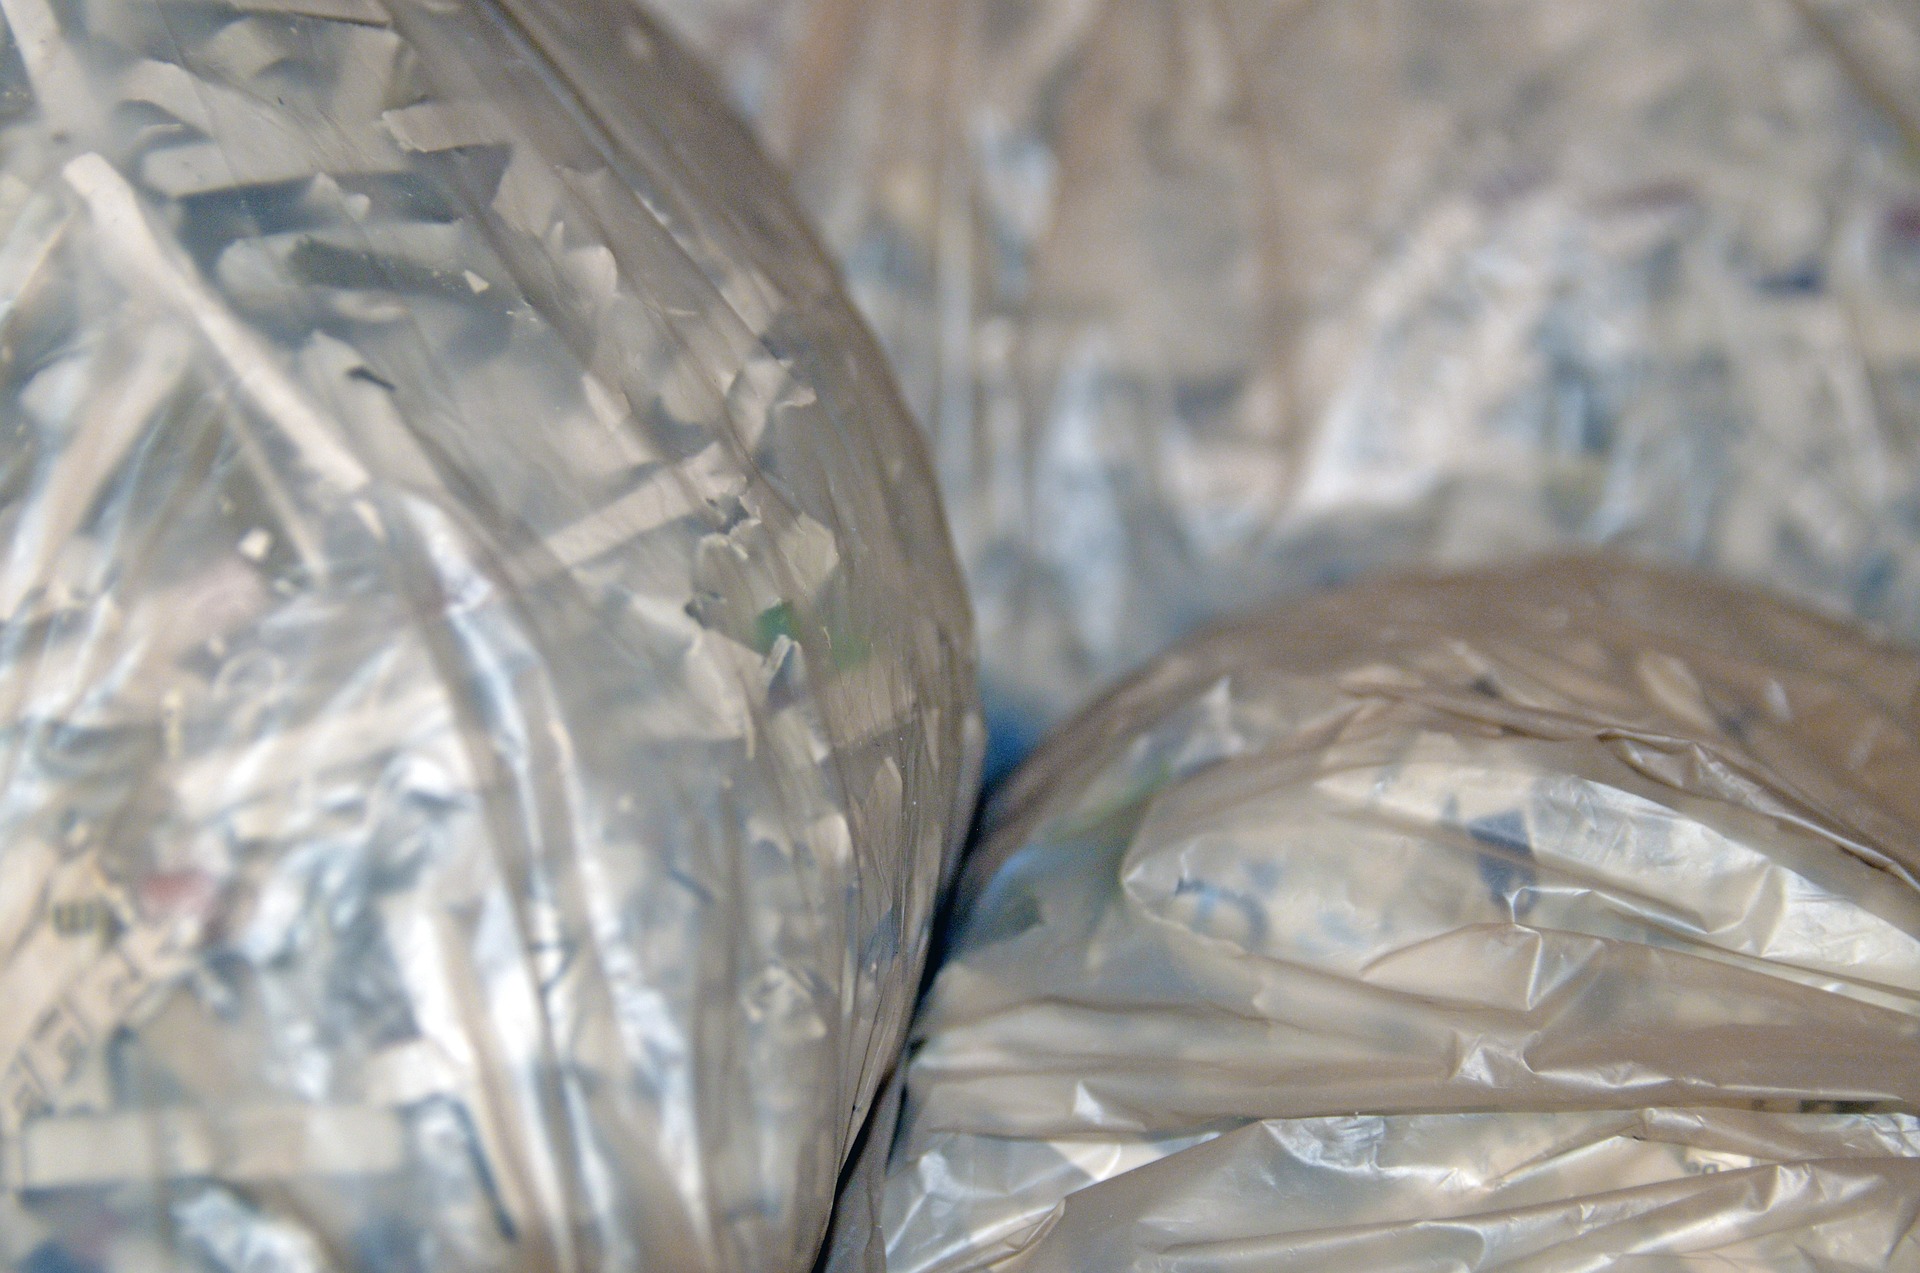 plastic bags full of shredded paper.